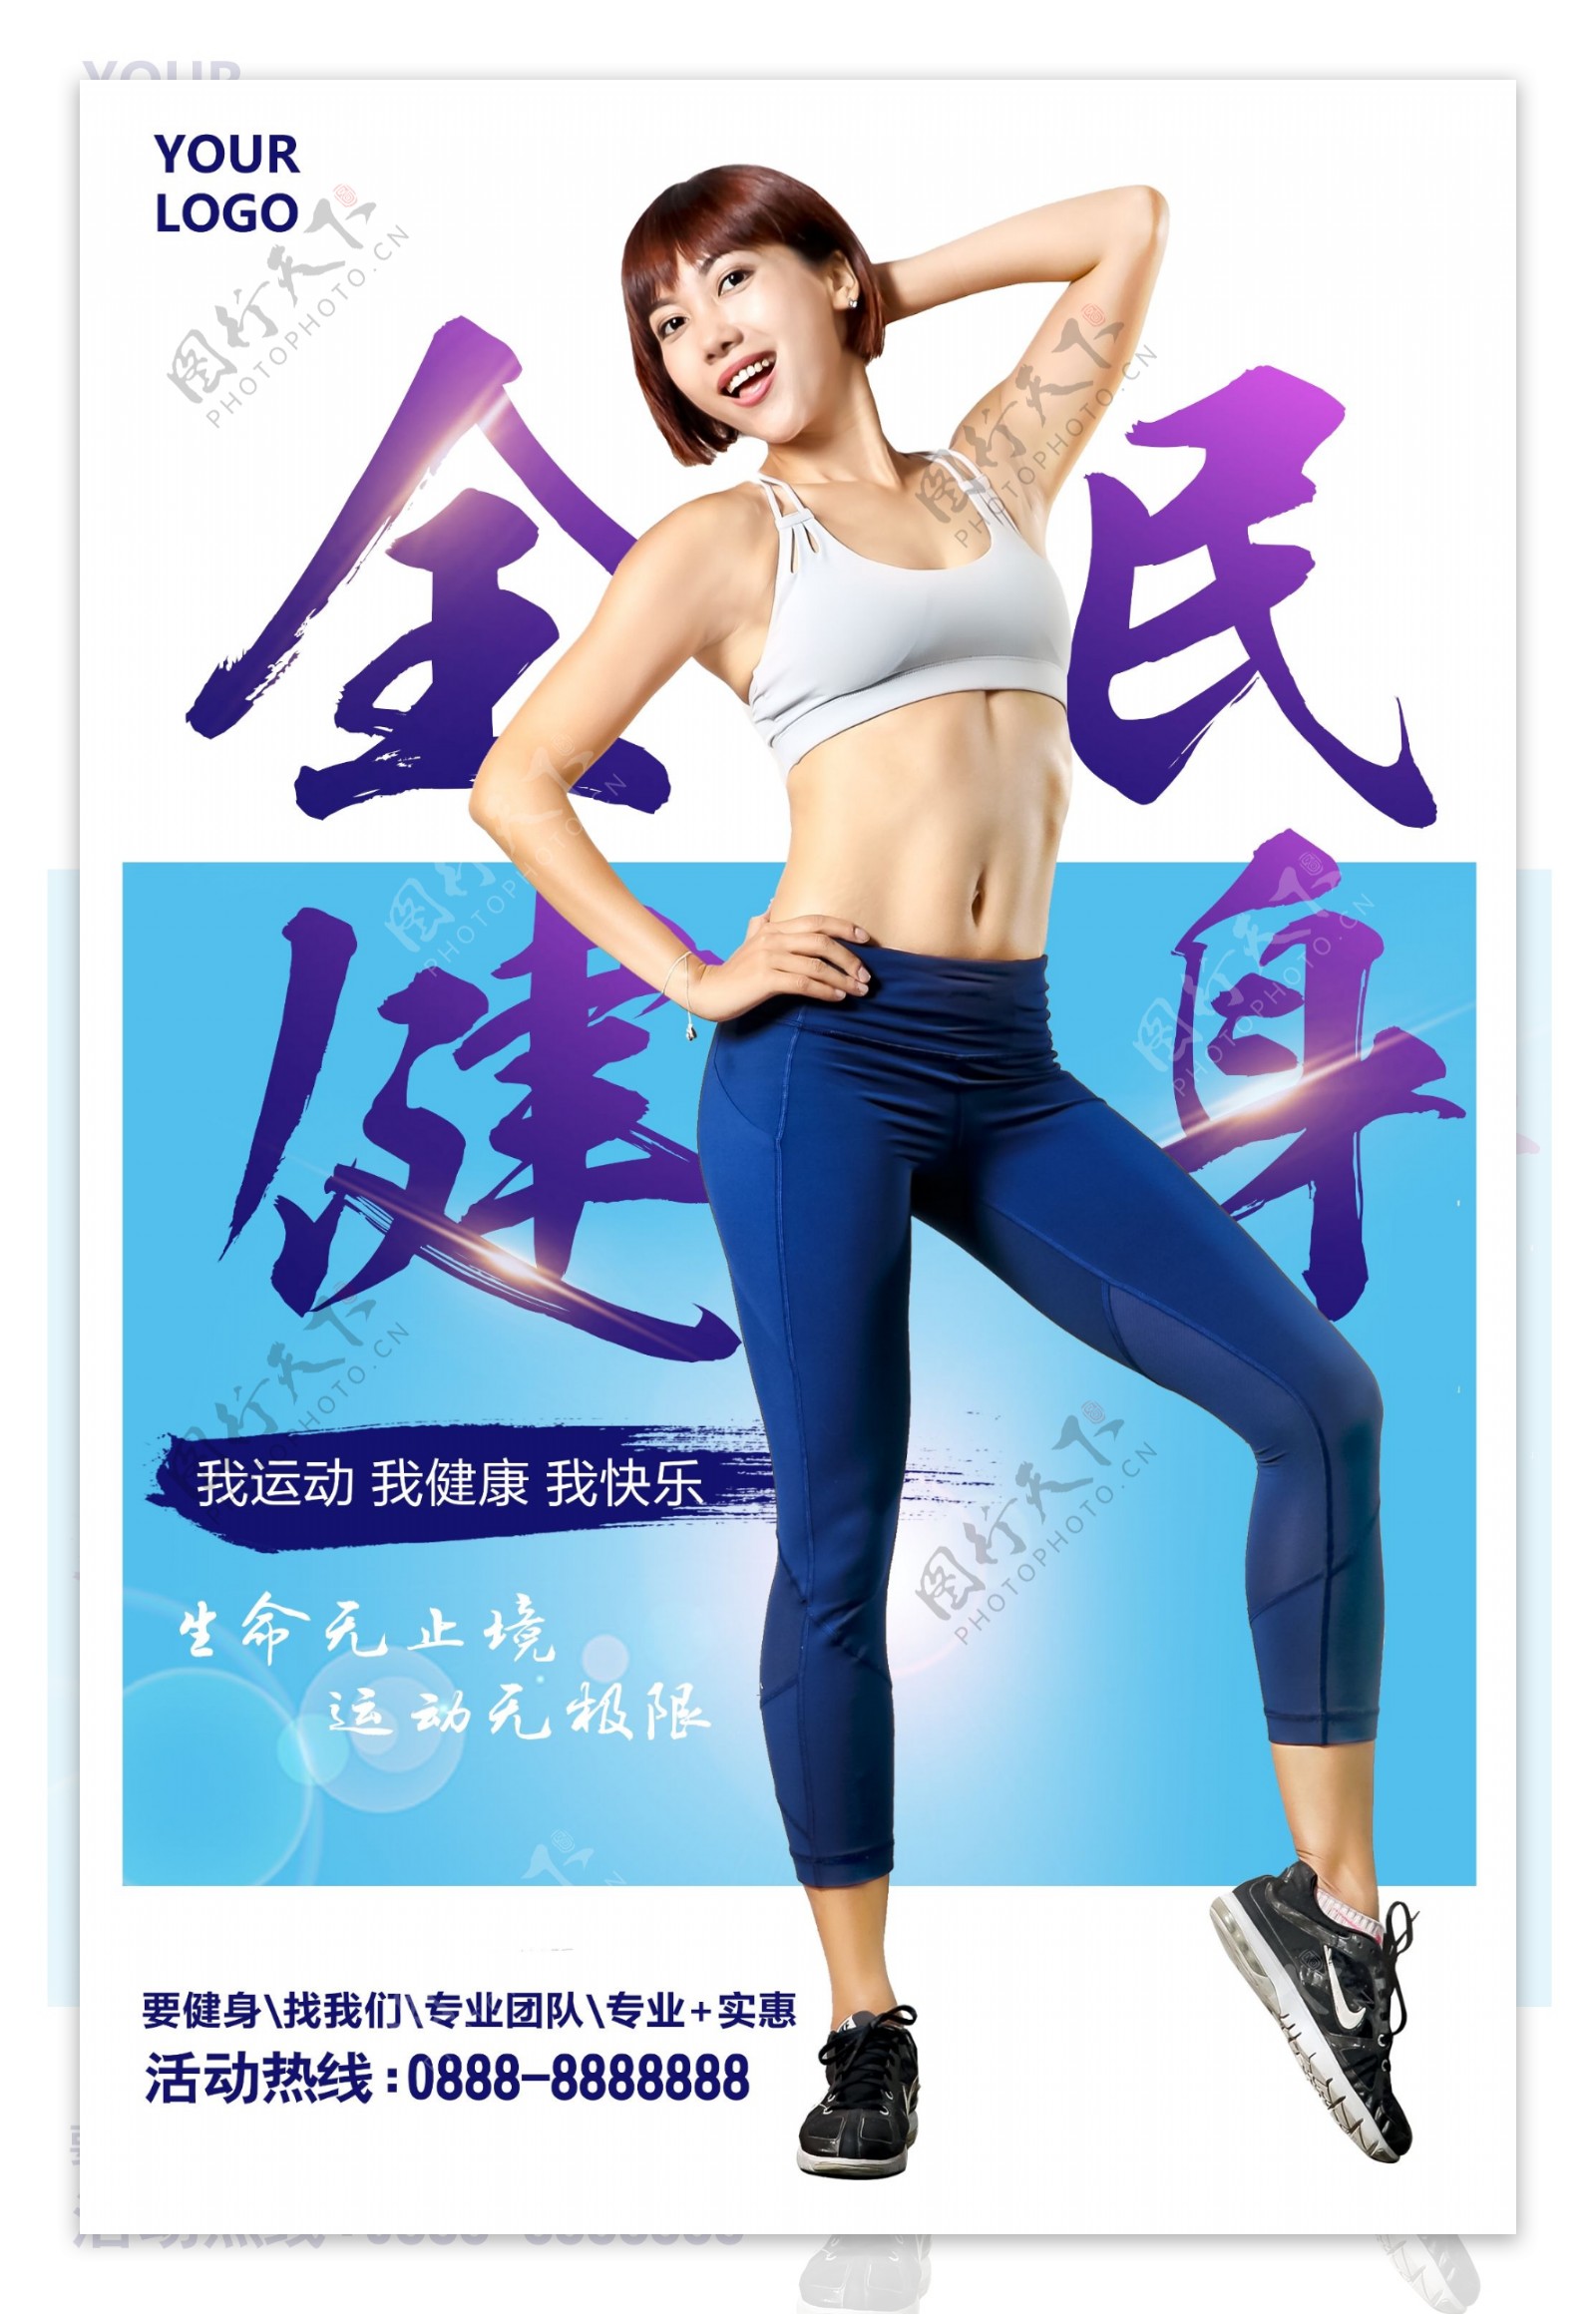 简约全民健身女子运动宣传海报